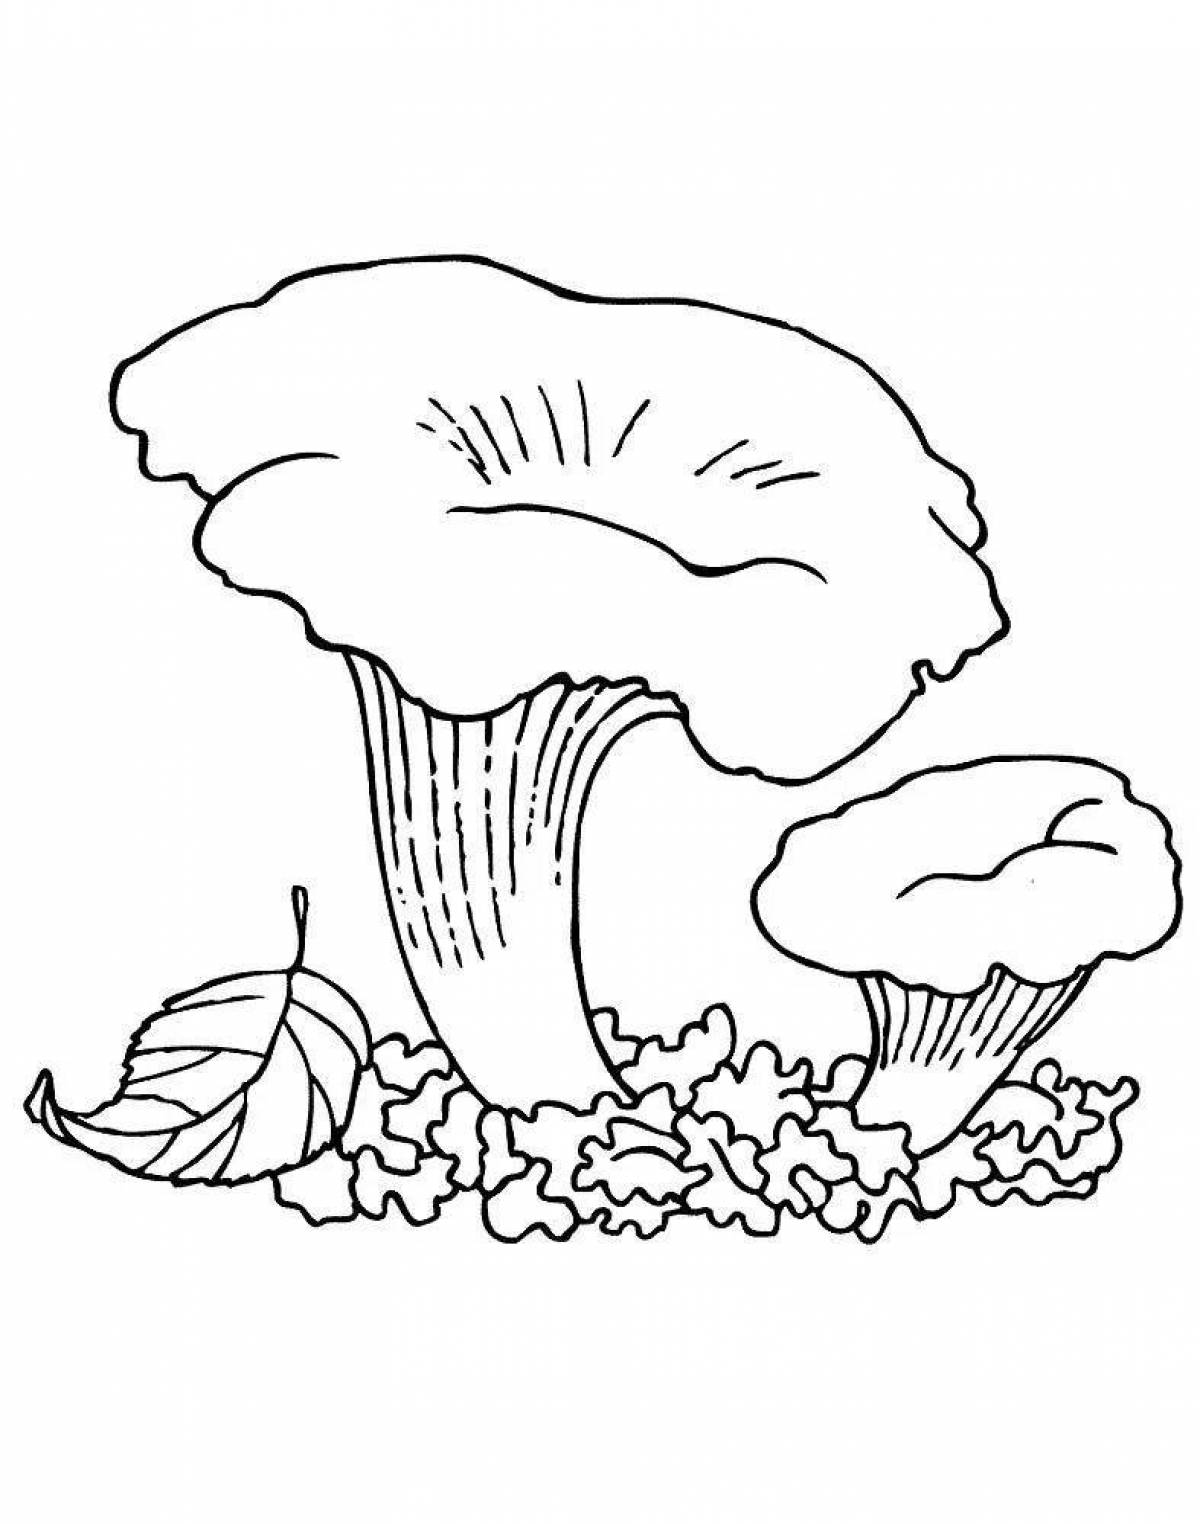 Милая раскраска грибов для детей 3-4 лет